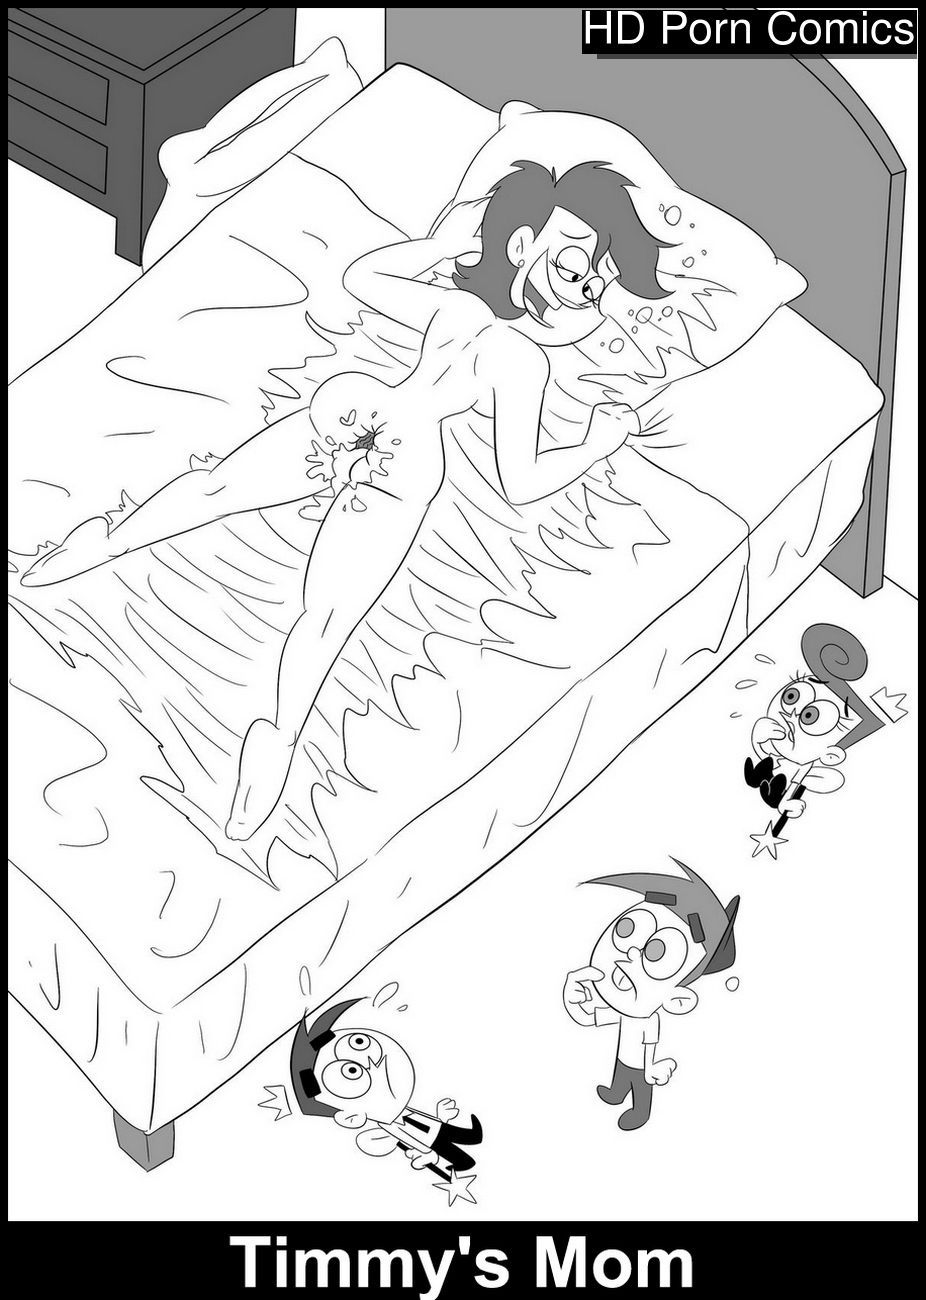 926px x 1300px - Timmy's Mom Sex Comic - HD Porn Comics